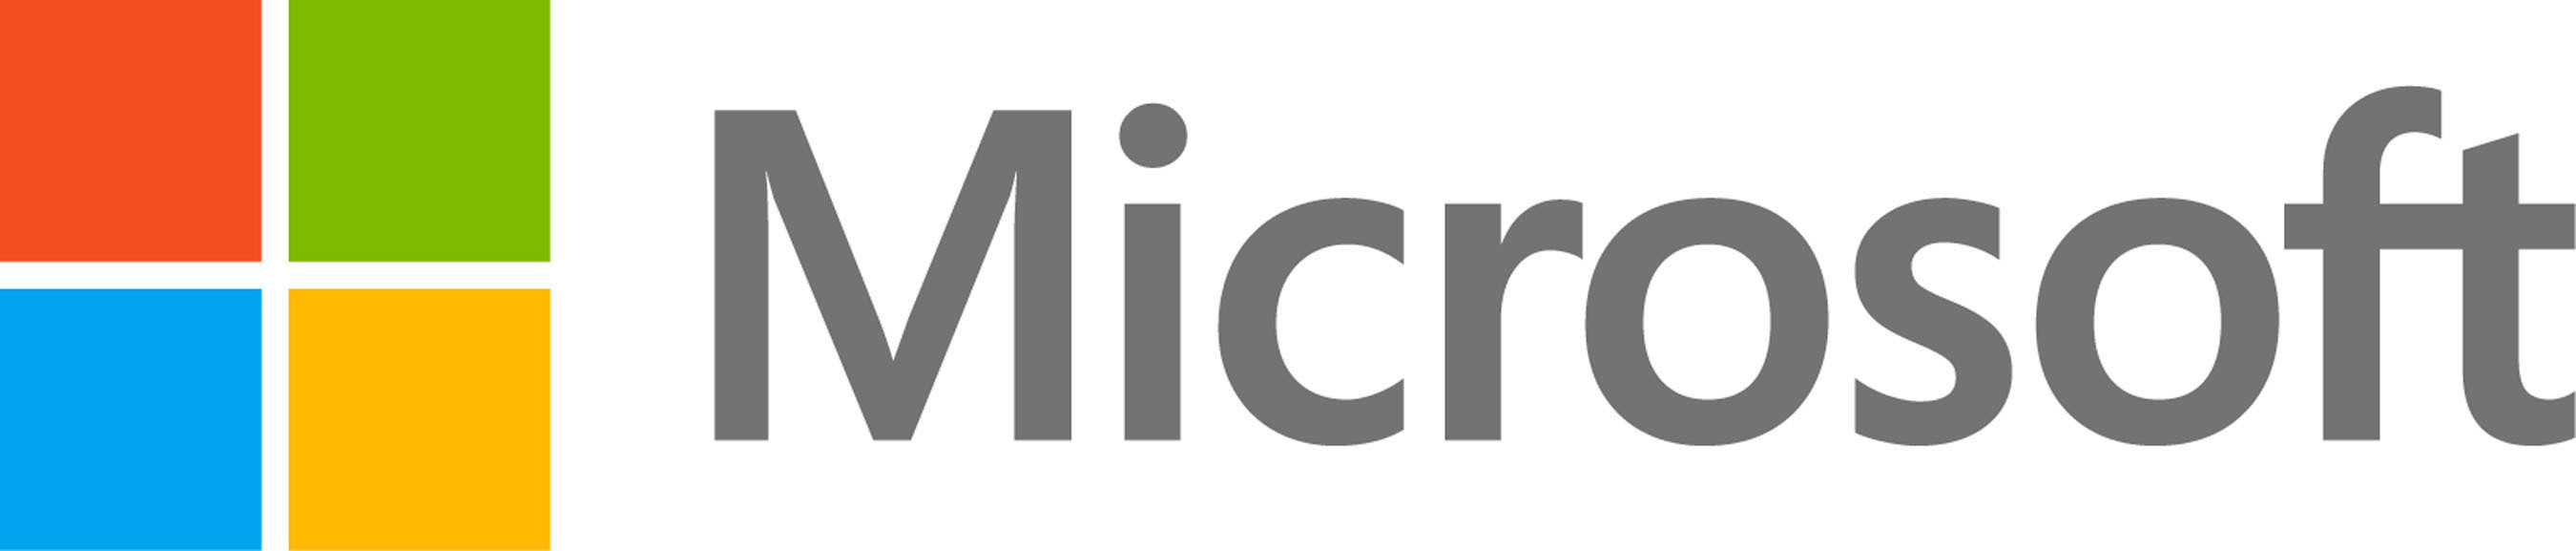 Microsoft 20 anniversary